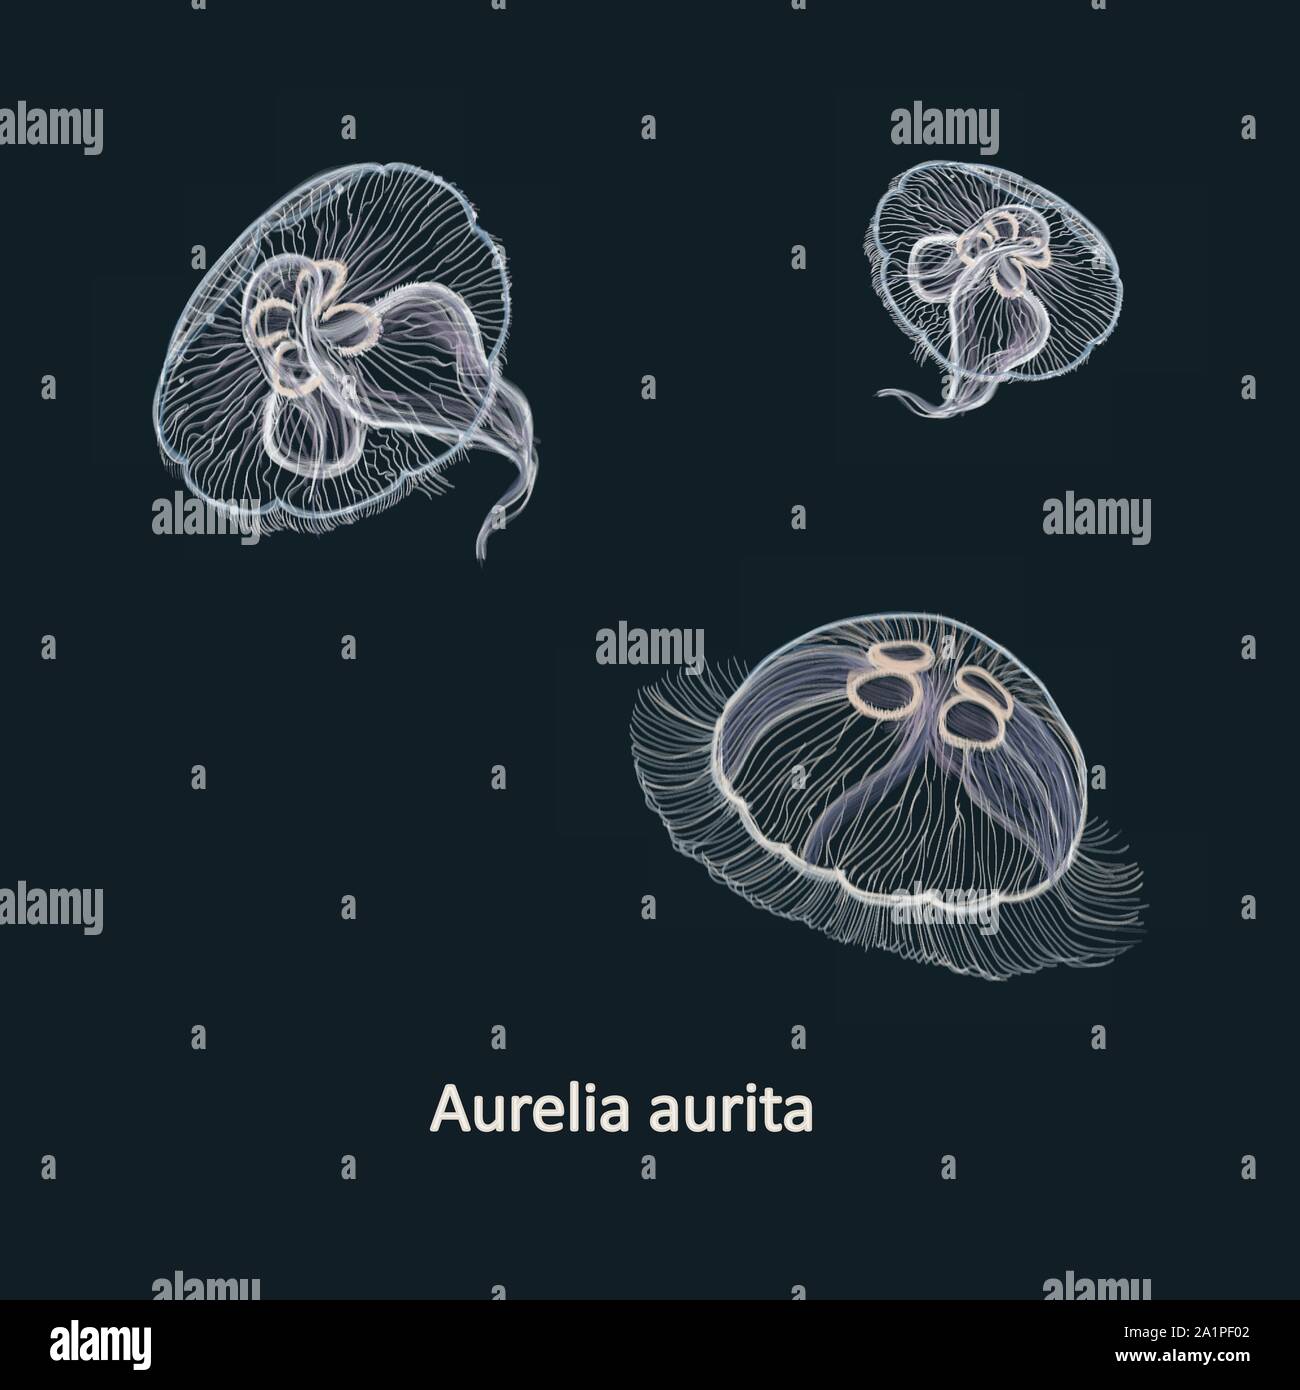 Dibujadas a mano ilustración vectorial de la medusa Aurelia aurita, también denominado common medusas Medusas, luna, luna, gelatina o jalea de platillo contra la oscuridad Ilustración del Vector